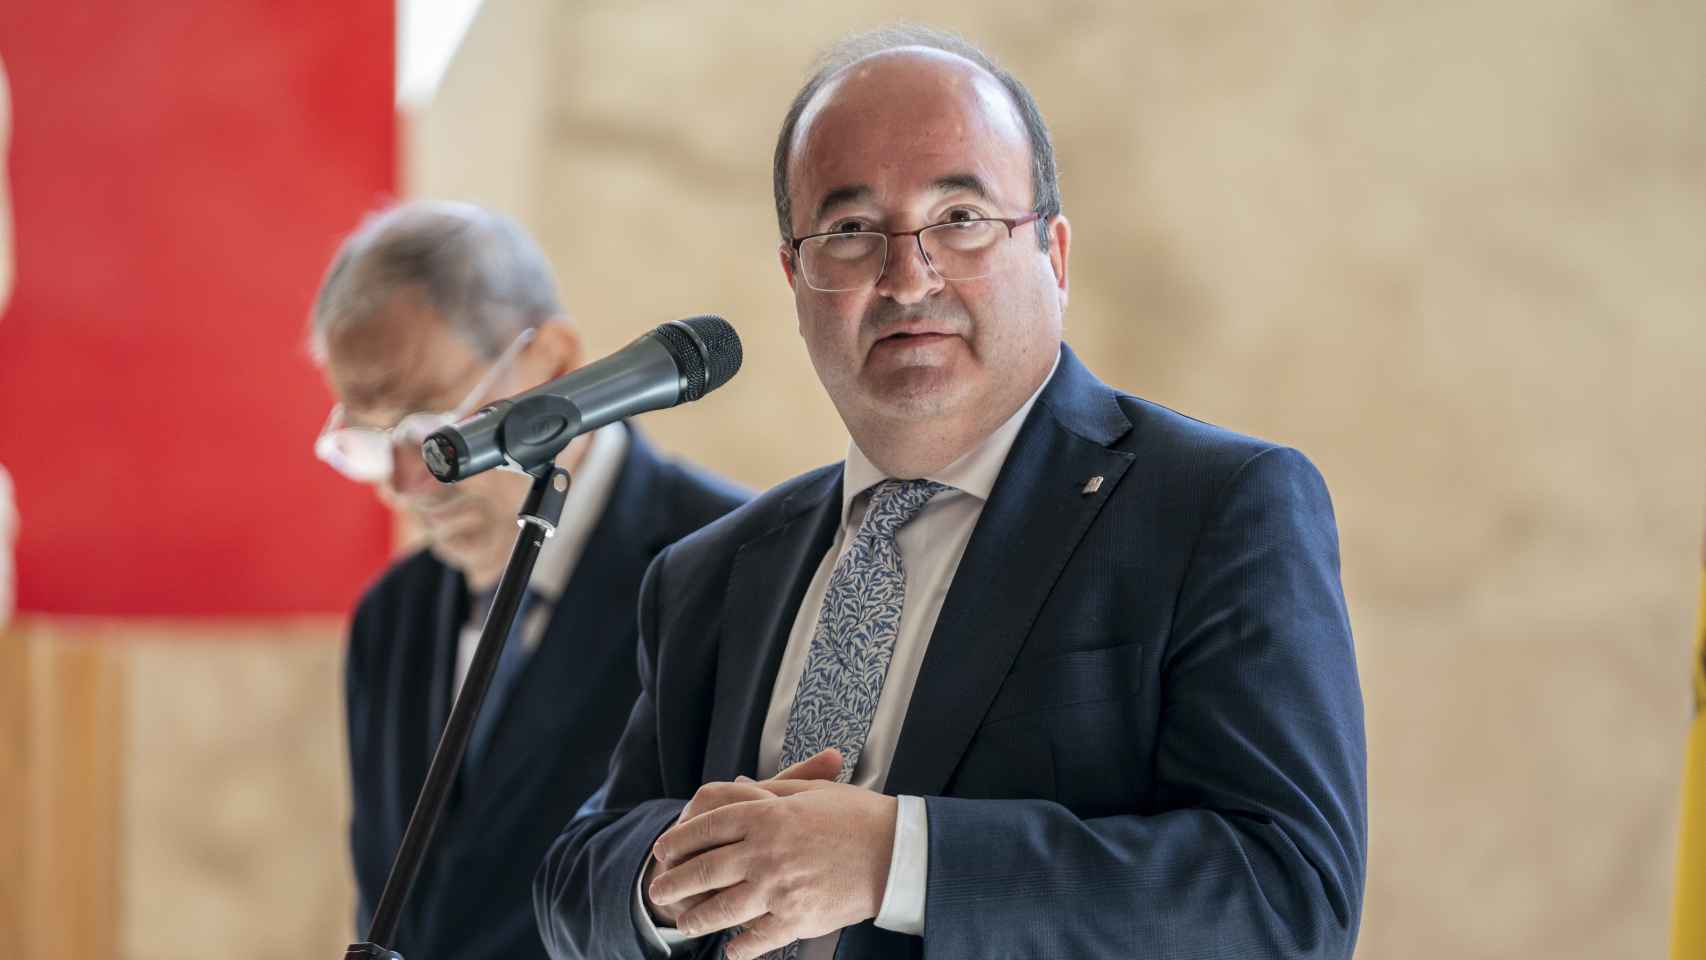 El ministro de Cultura y Deporte, Miquel Iceta, durante el homenaje a los museos de Ucrania organizado con motivo del Día Internacional de los Museos, en el Museo Nacional del Prado, a 18 de mayo de 2022, en Madrid